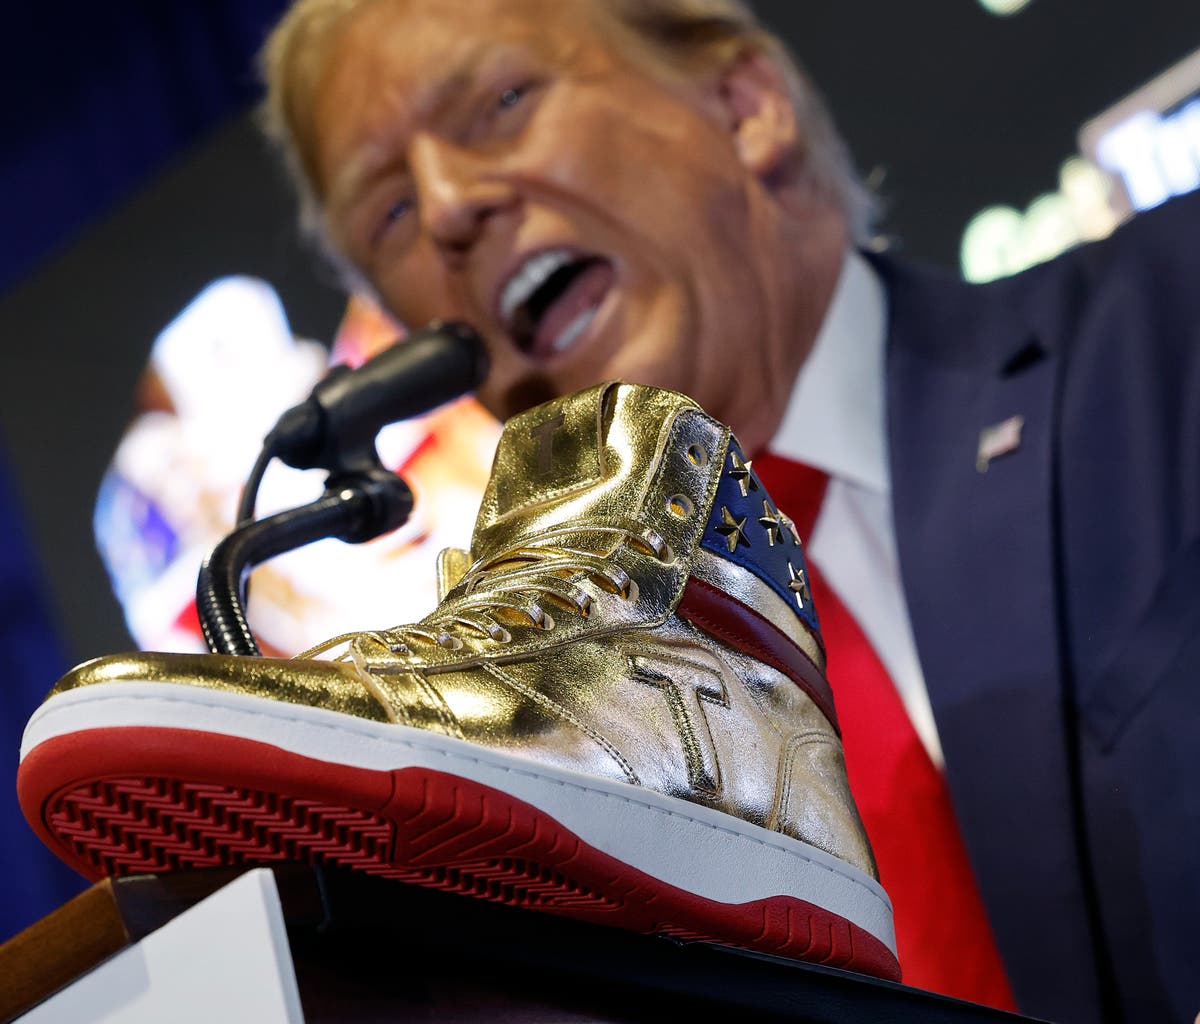 Sapatos Donald Trump: tudo o que sabemos sobre os cano alto dourado 'Never Give Up' de US $ 399